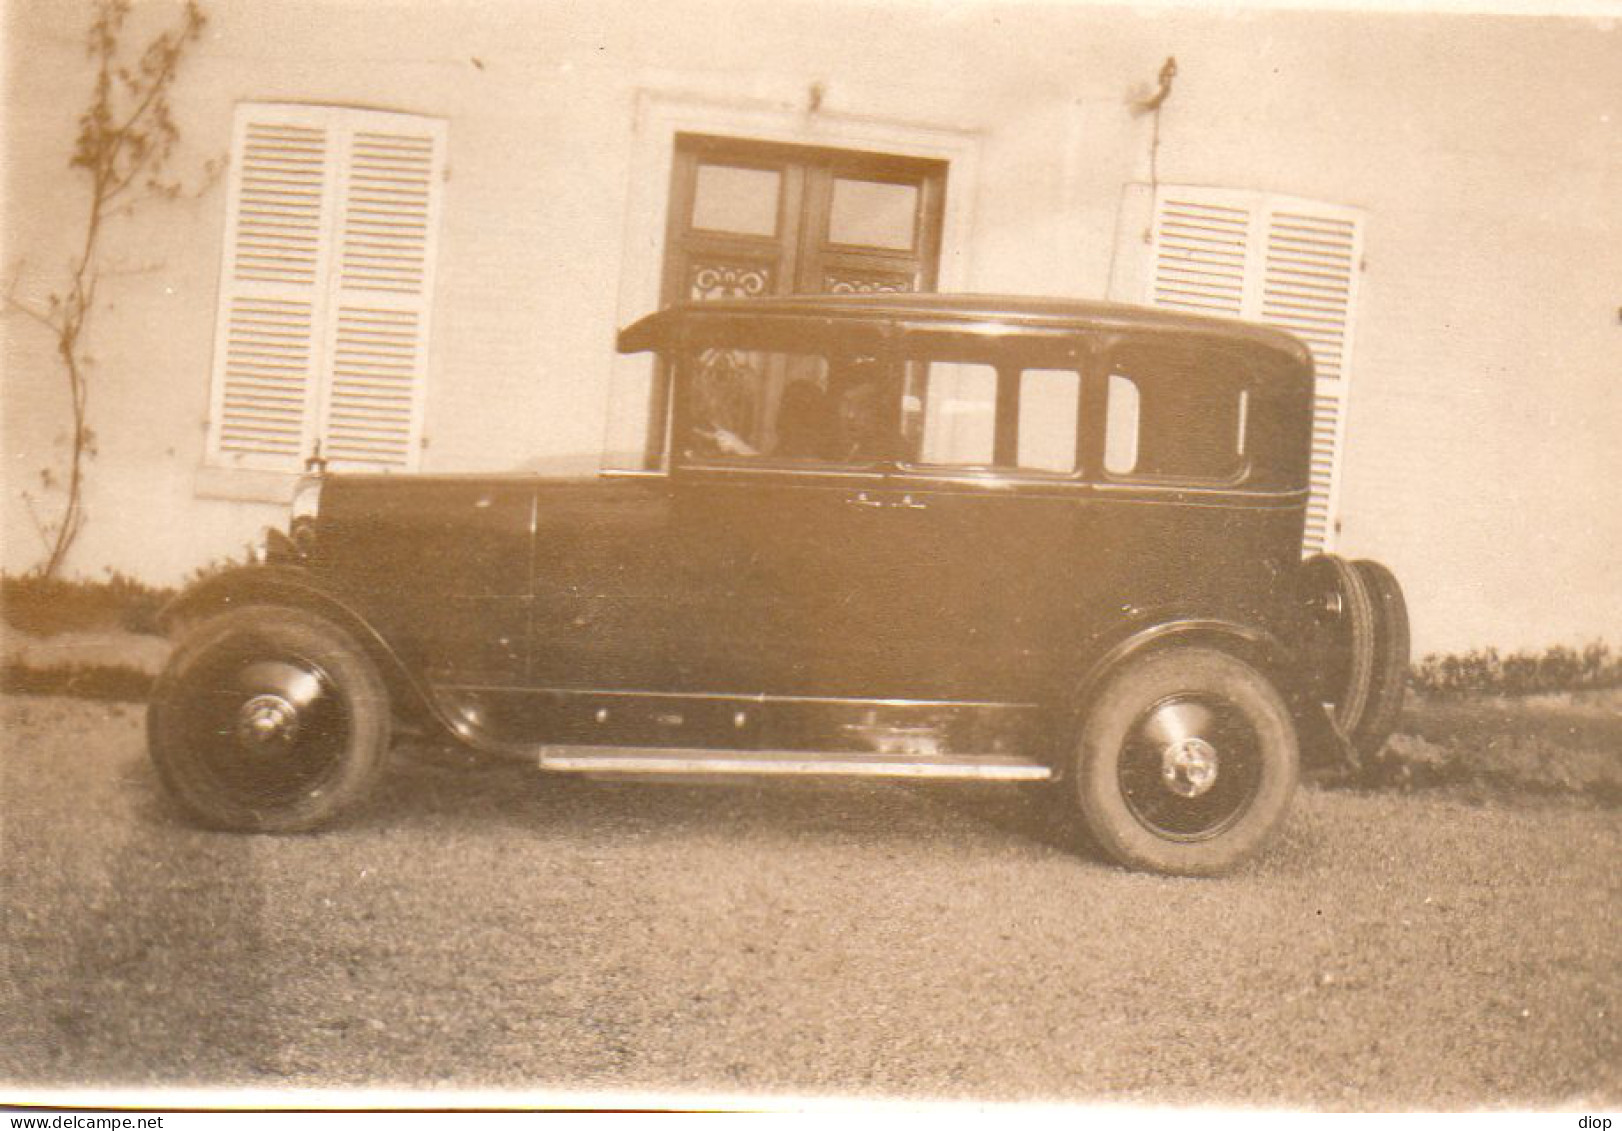 Photo Vintage Paris Snap Shop -voiture Car  - Automobile